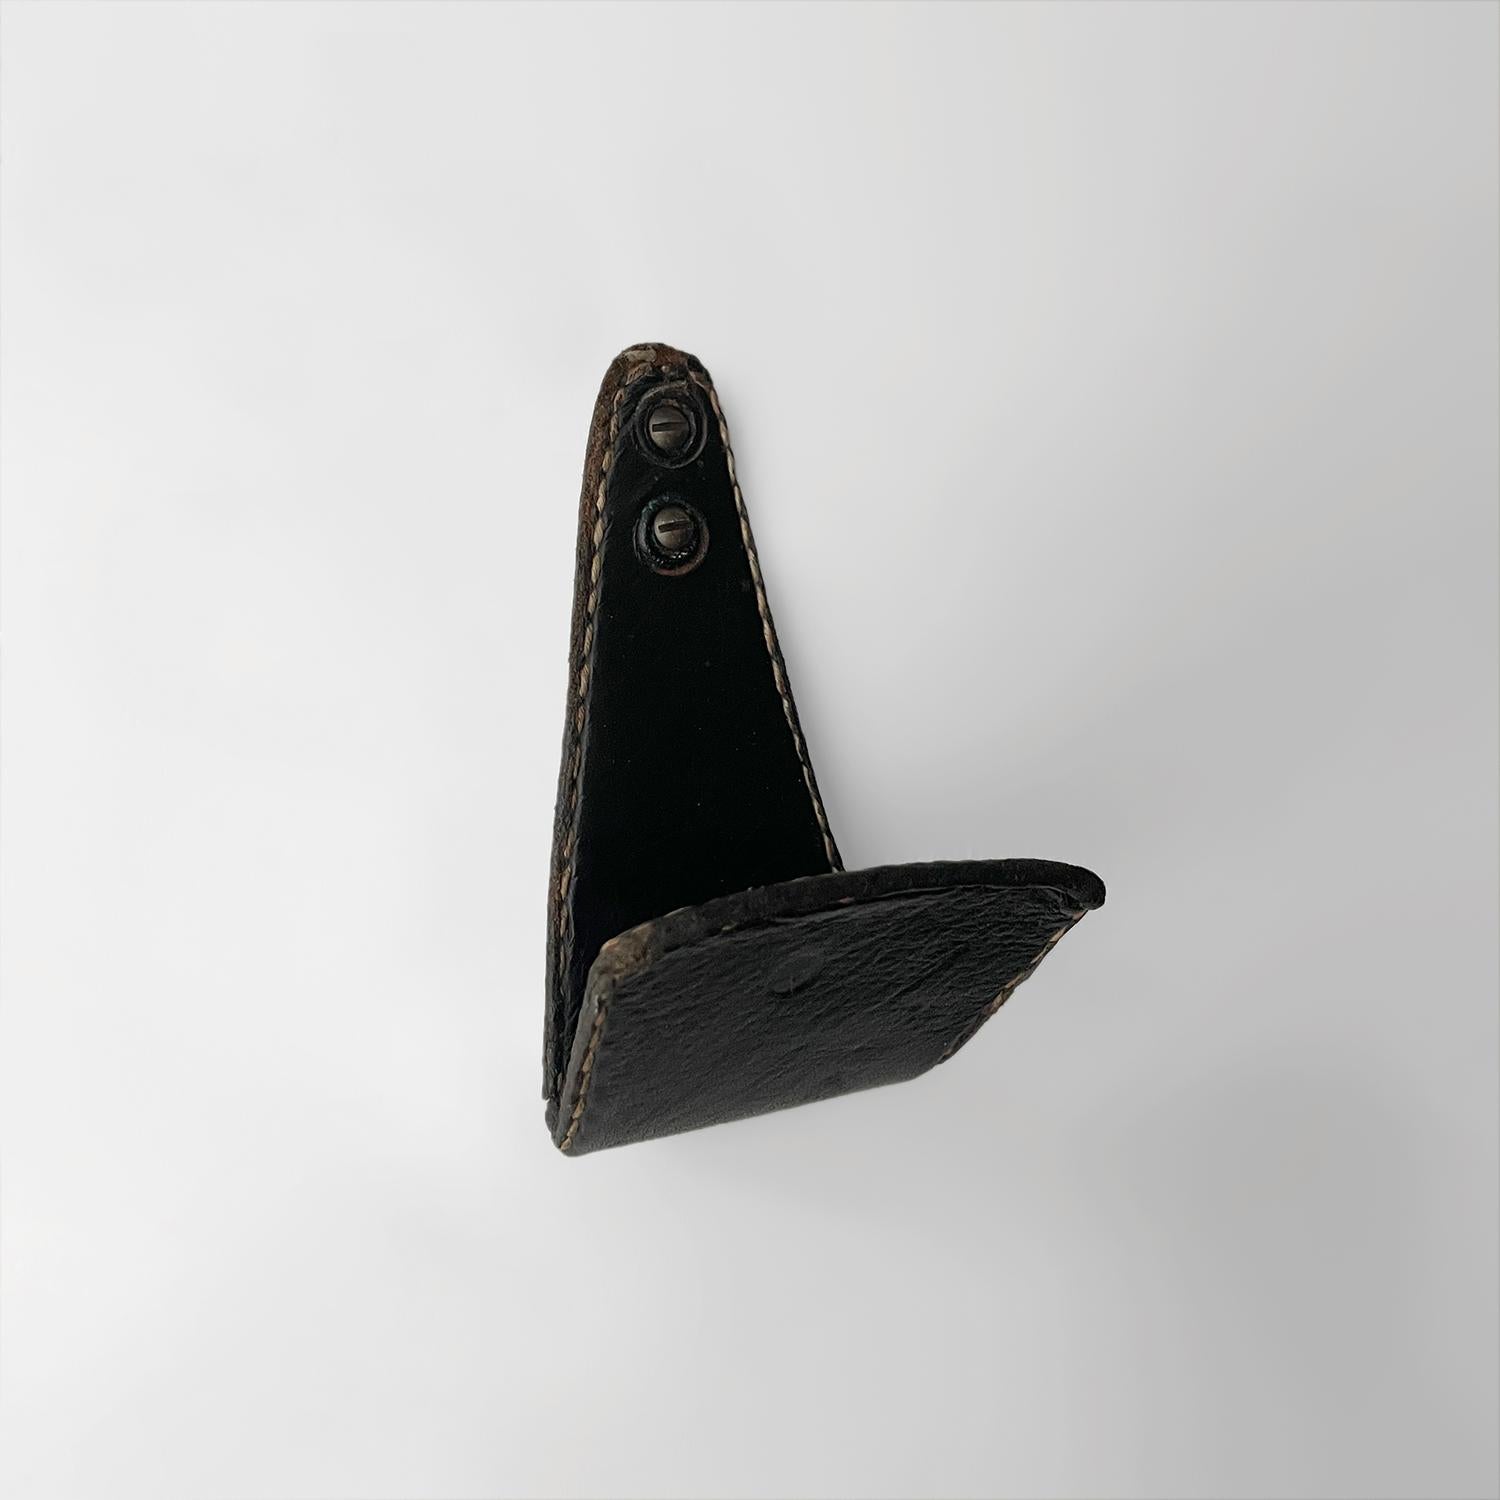 Jacques Adnet Kleiderhaken aus Leder
Frankreich, etwa 1940er Jahre 
Schwarzes Leder mit charakteristischen Kontrastnähten
Leichte Oberflächenmarkierungen 
Patina durch Alter und Gebrauch - siehe Fotos
